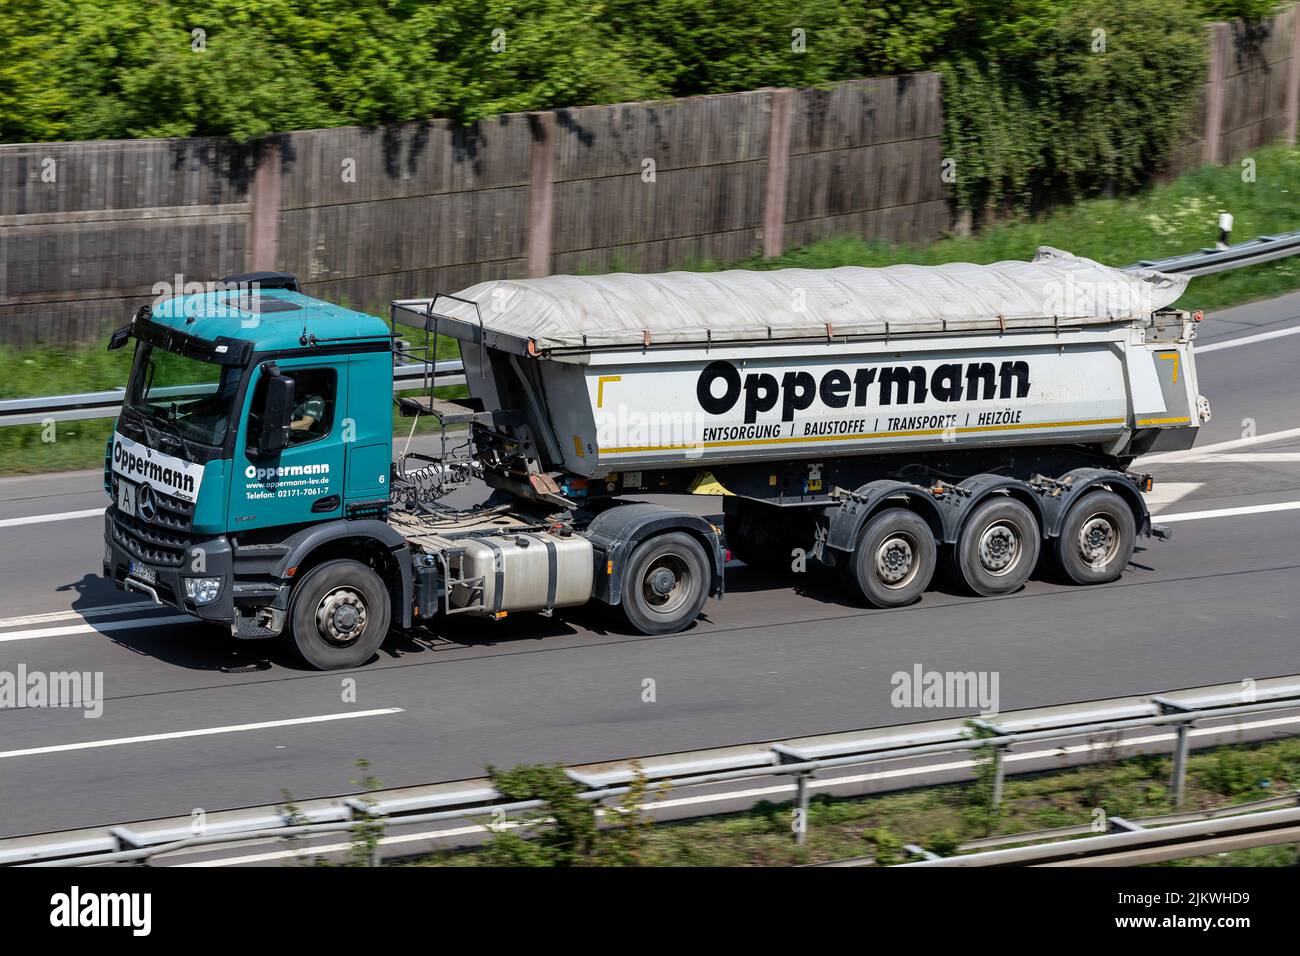 Camión Oppermann Mercedes-Benz Arocs con remolque volquete en autopista Foto de stock